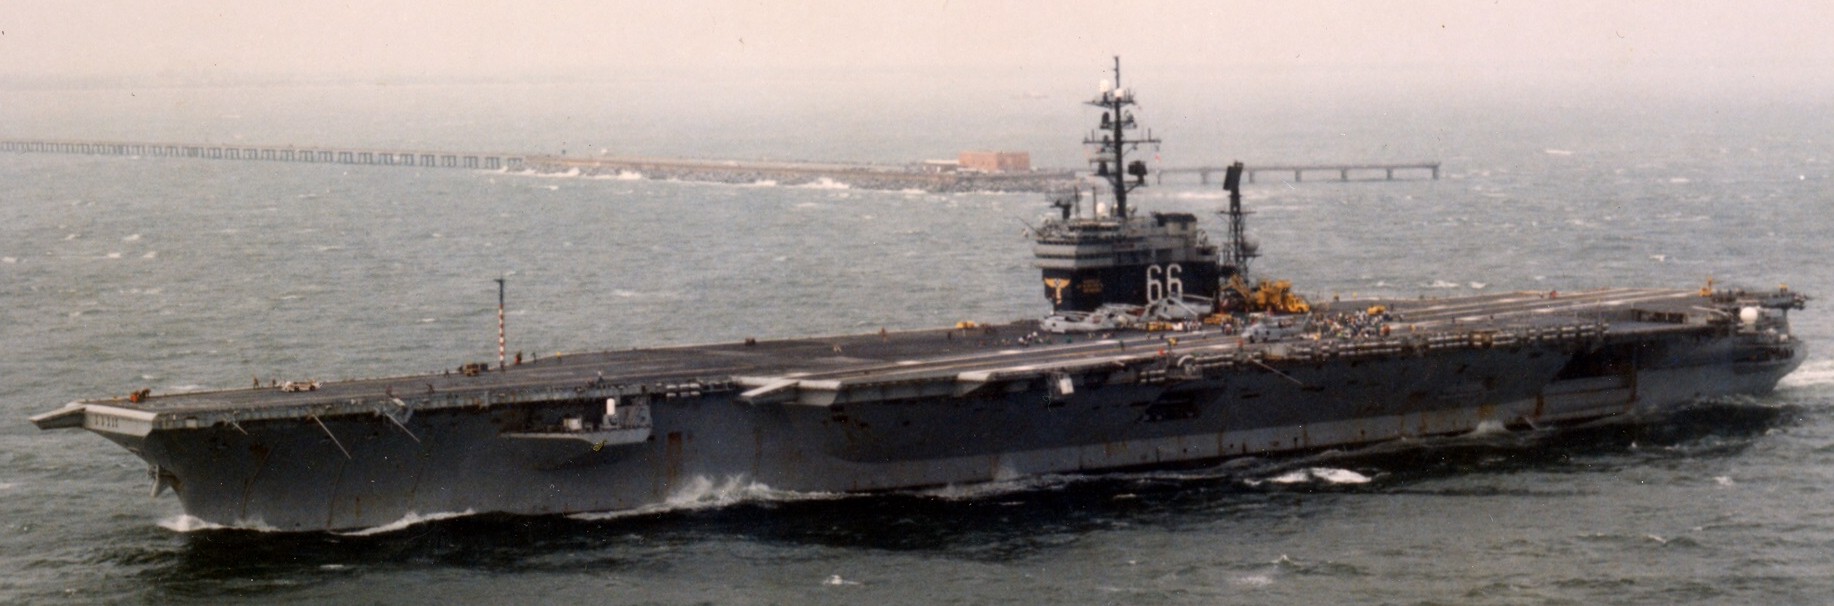 cv-66 uss america kitty hawk class aircraft carrier departing norfolk 1995 108